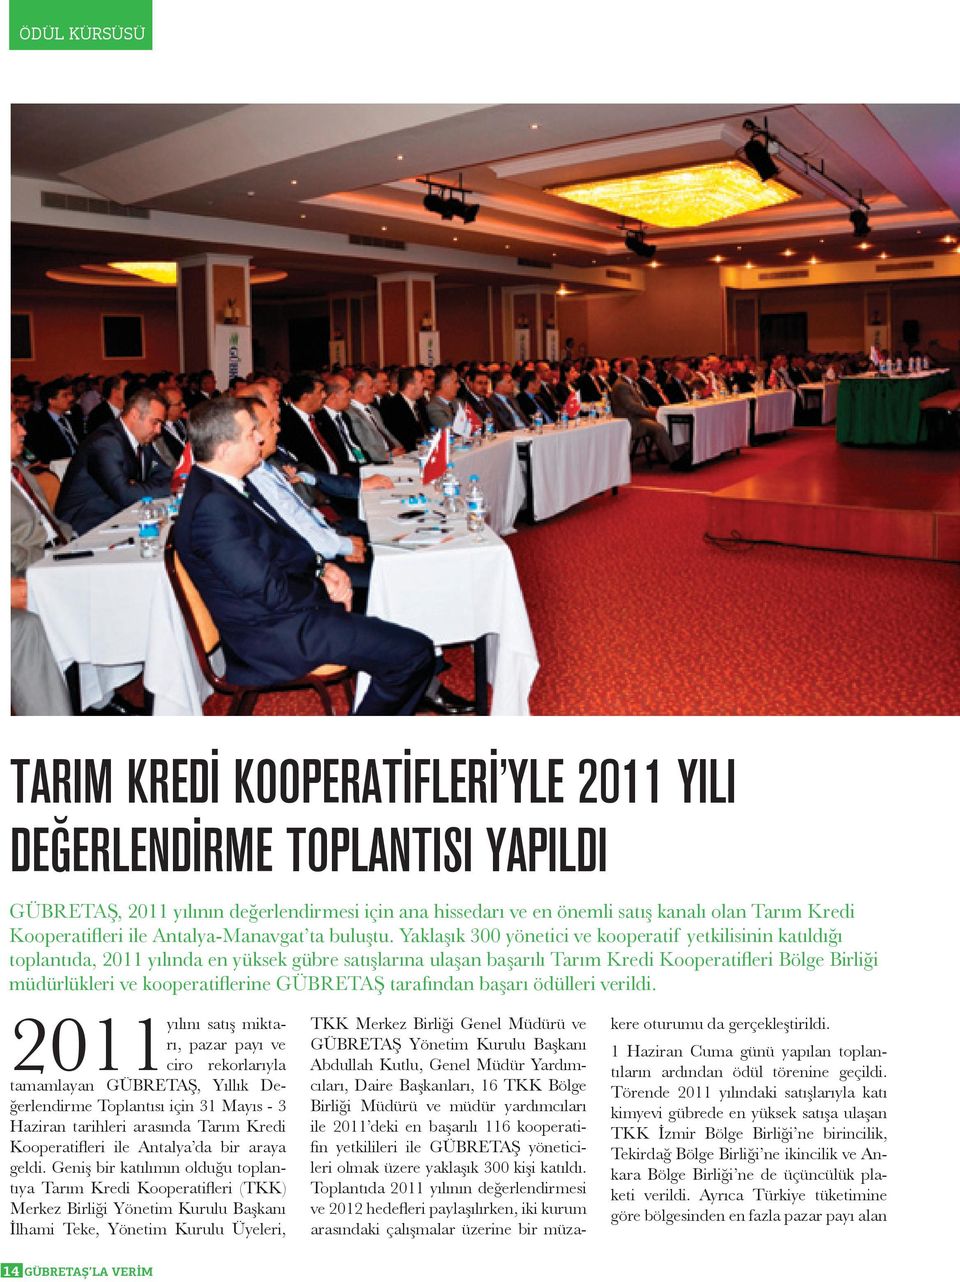 Yaklaşık 300 yönetici ve kooperatif yetkilisinin katıldığı toplantıda, 2011 yılında en yüksek gübre satışlarına ulaşan başarılı Tarım Kredi Kooperatifleri Bölge Birliği müdürlükleri ve